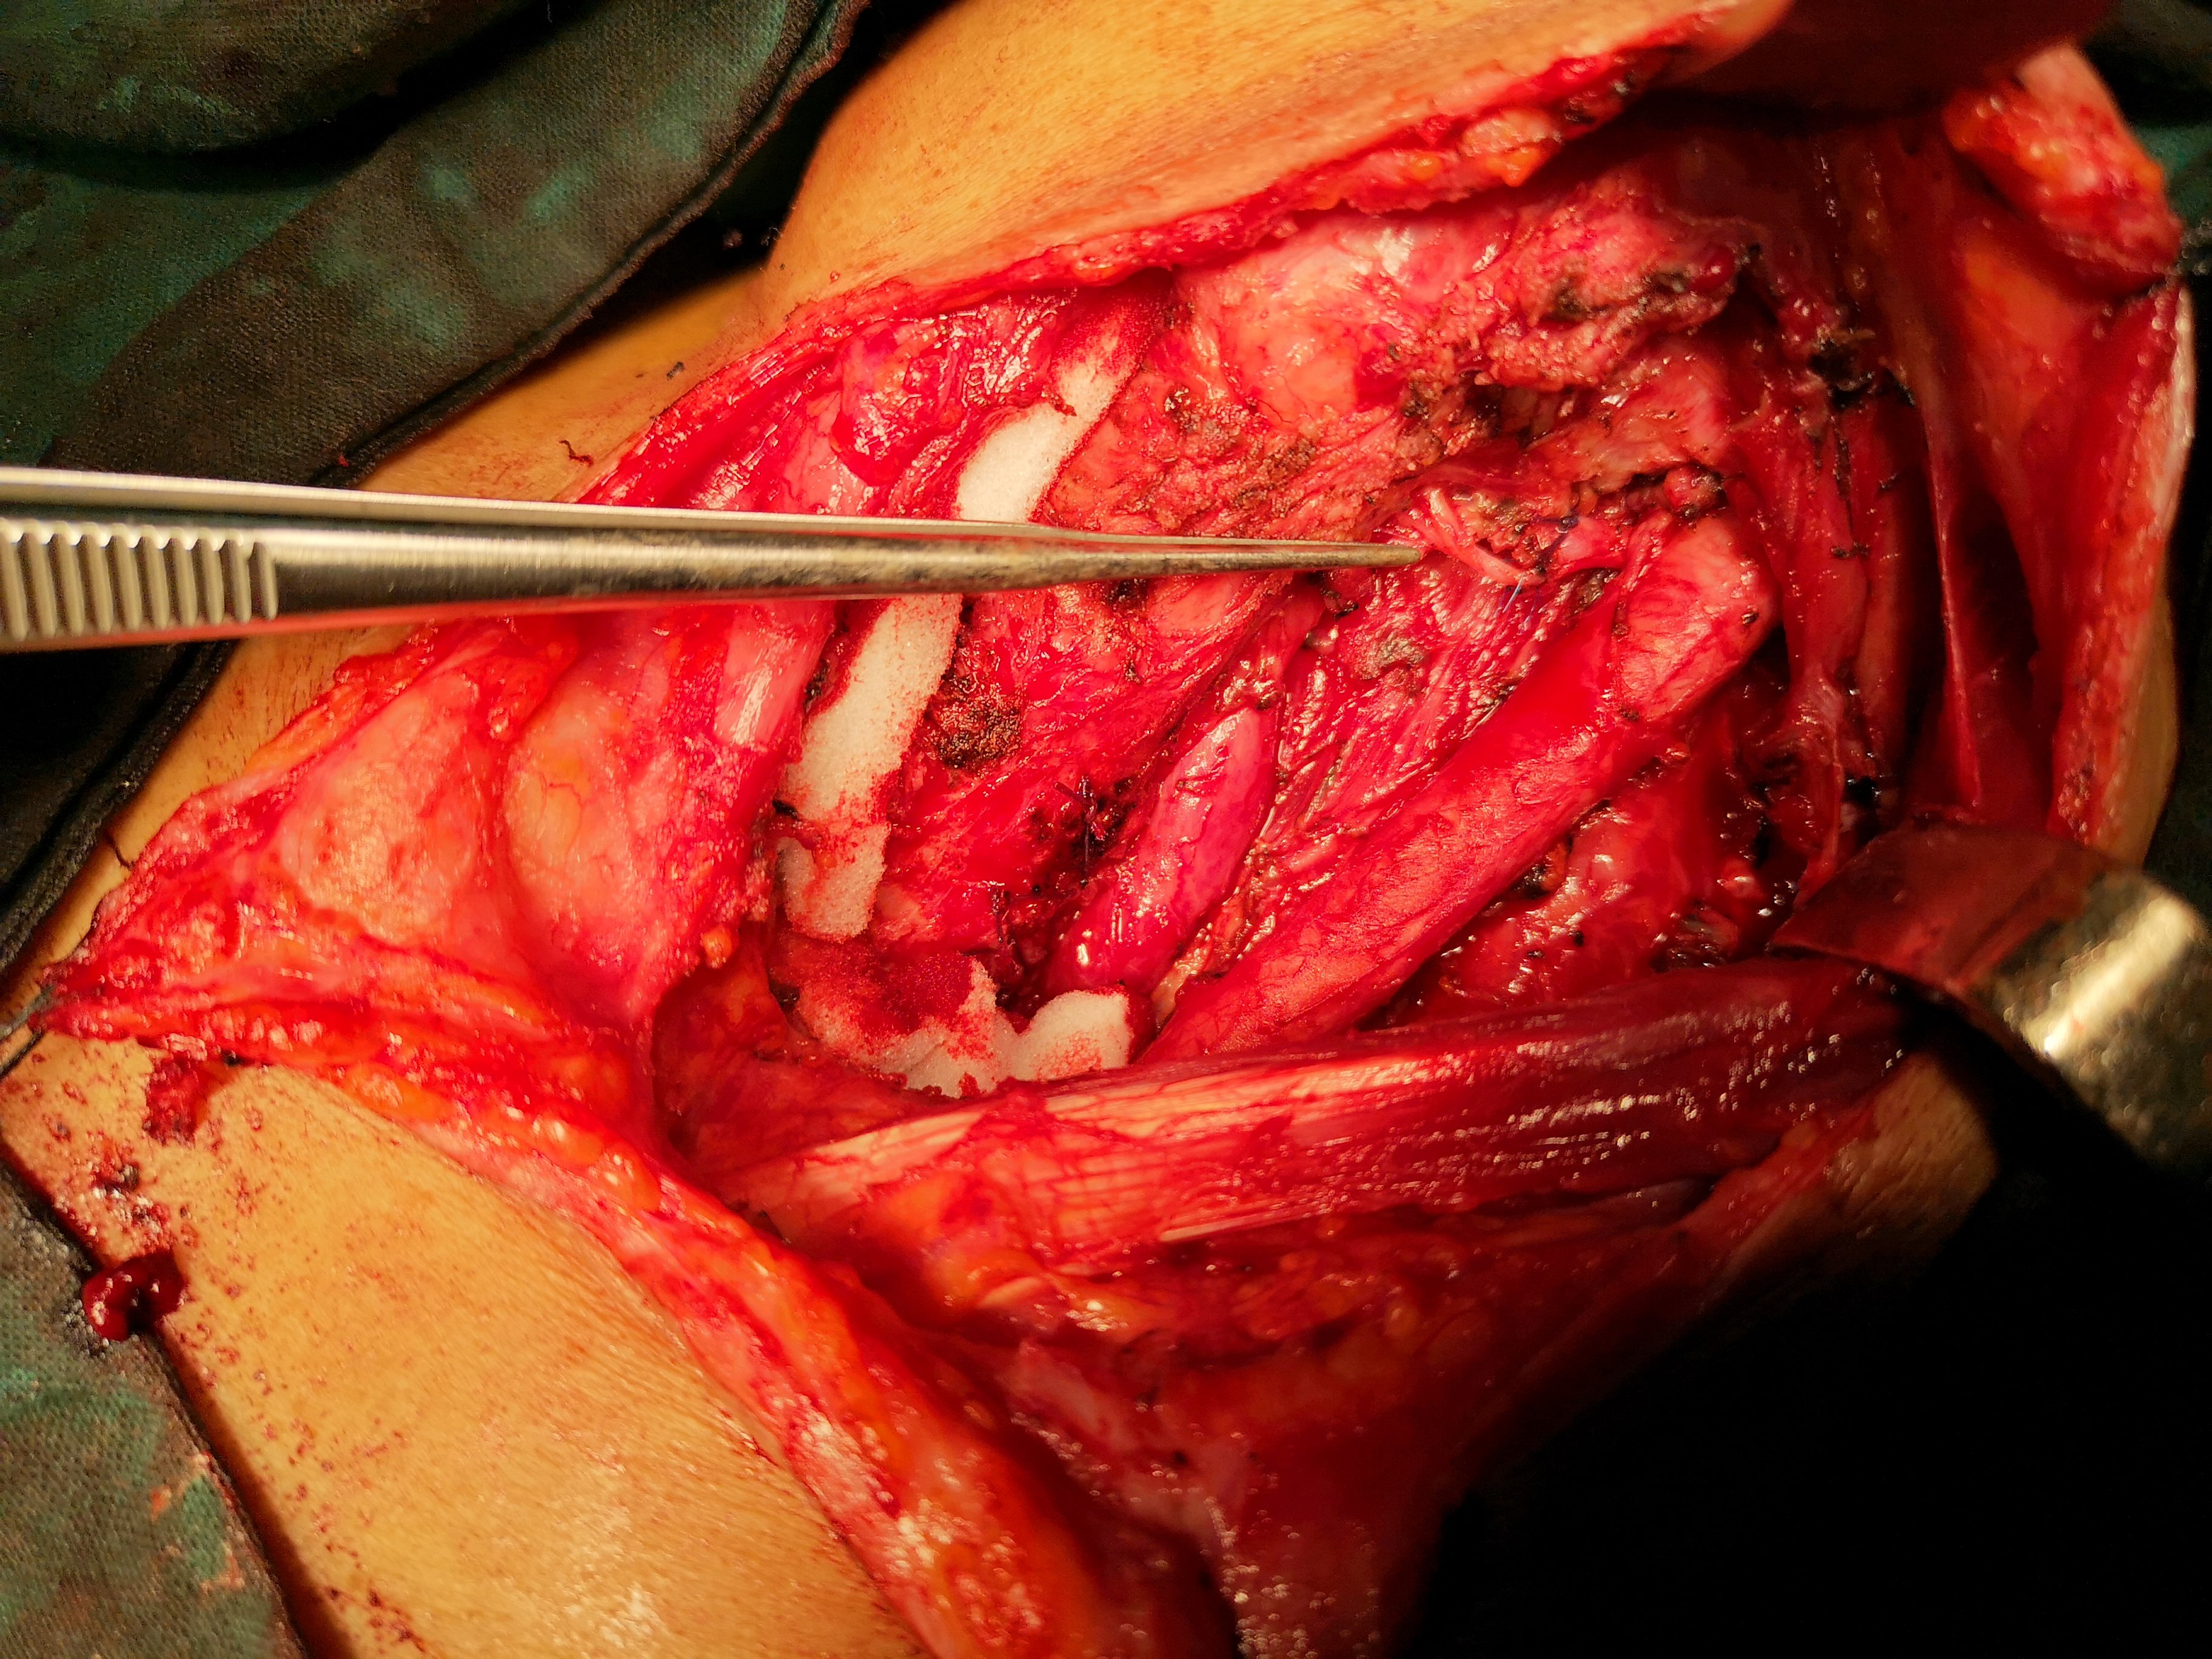 病例二手术中照片,镊子所指处,为修复首次手术损伤的喉返神经.